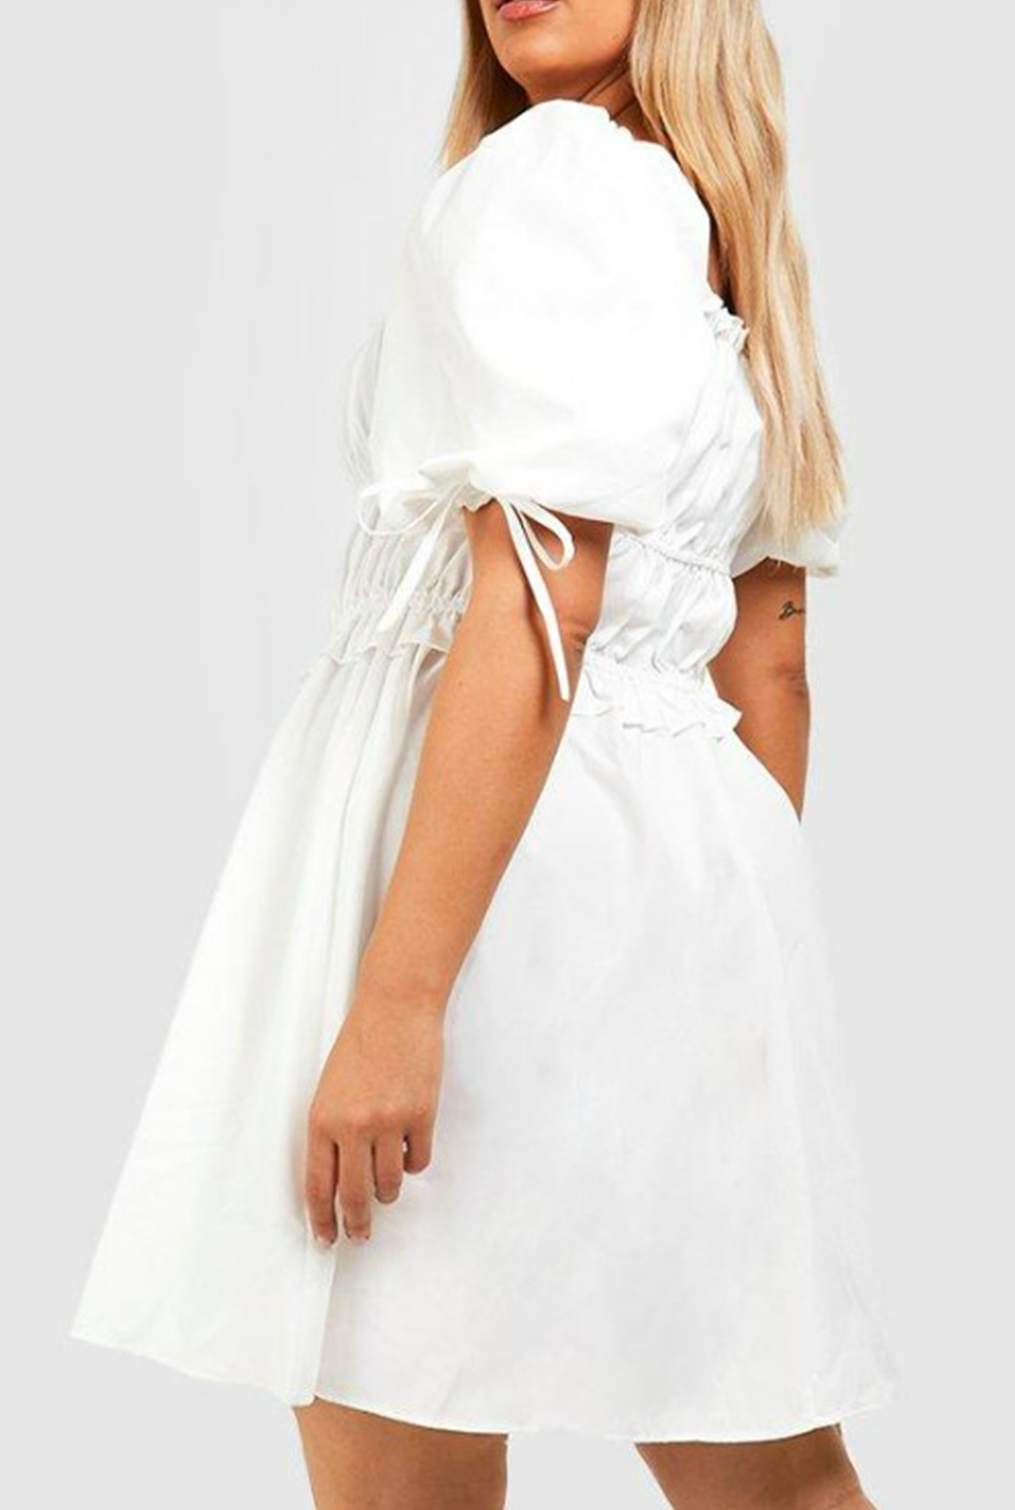 Confident White Dress